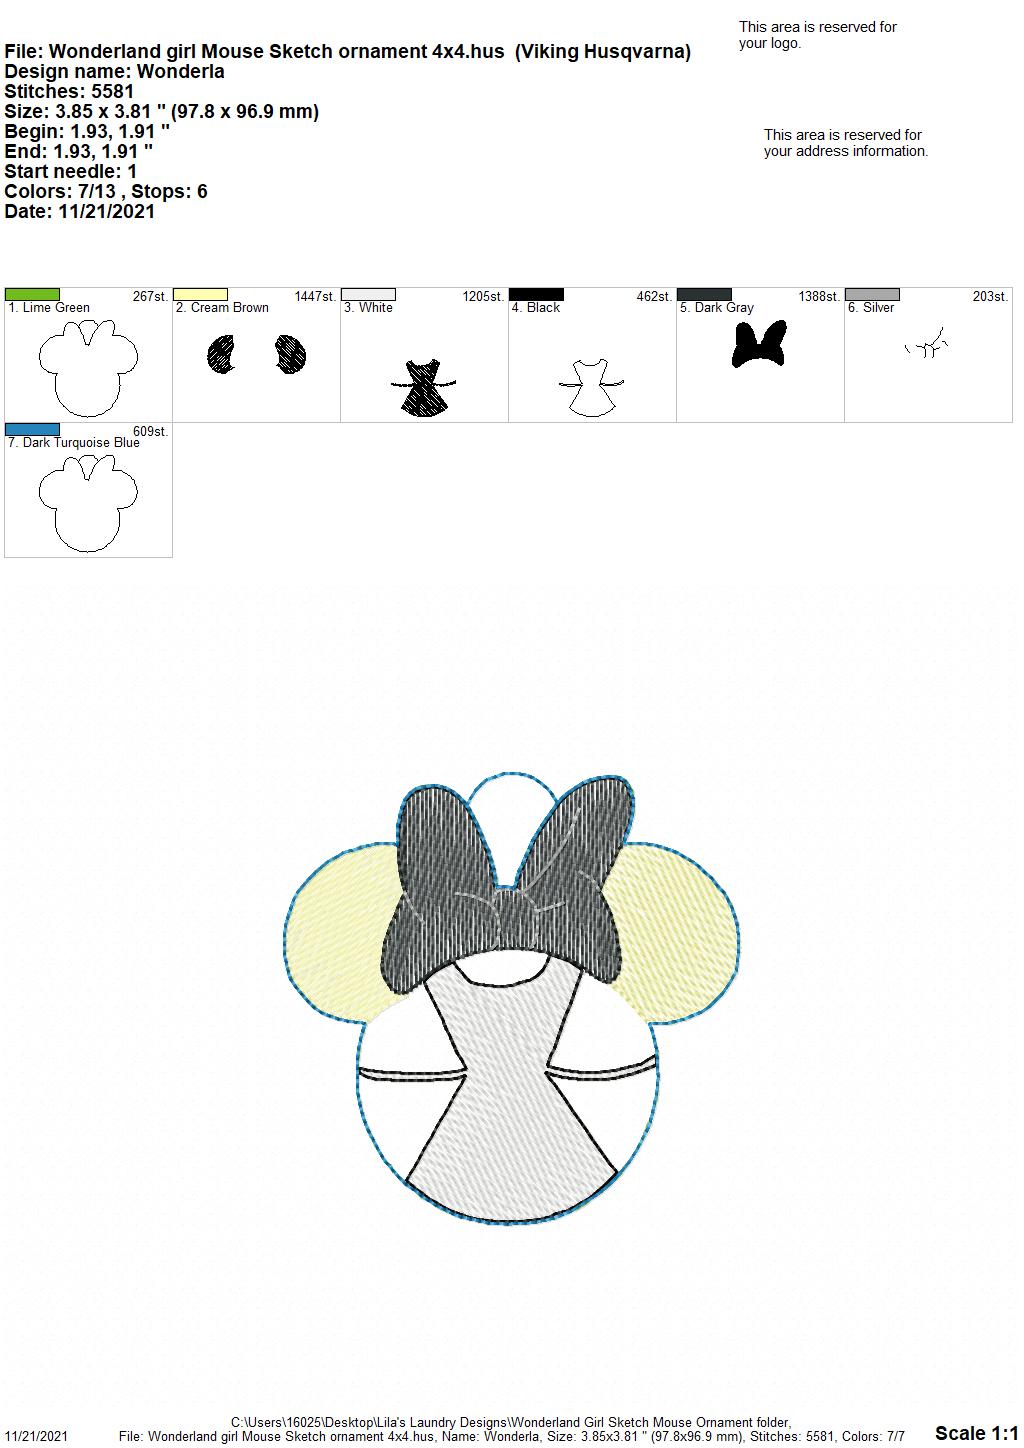 Wonderland Girl Mouse Sketch Ornament - Digital Embroidery Design